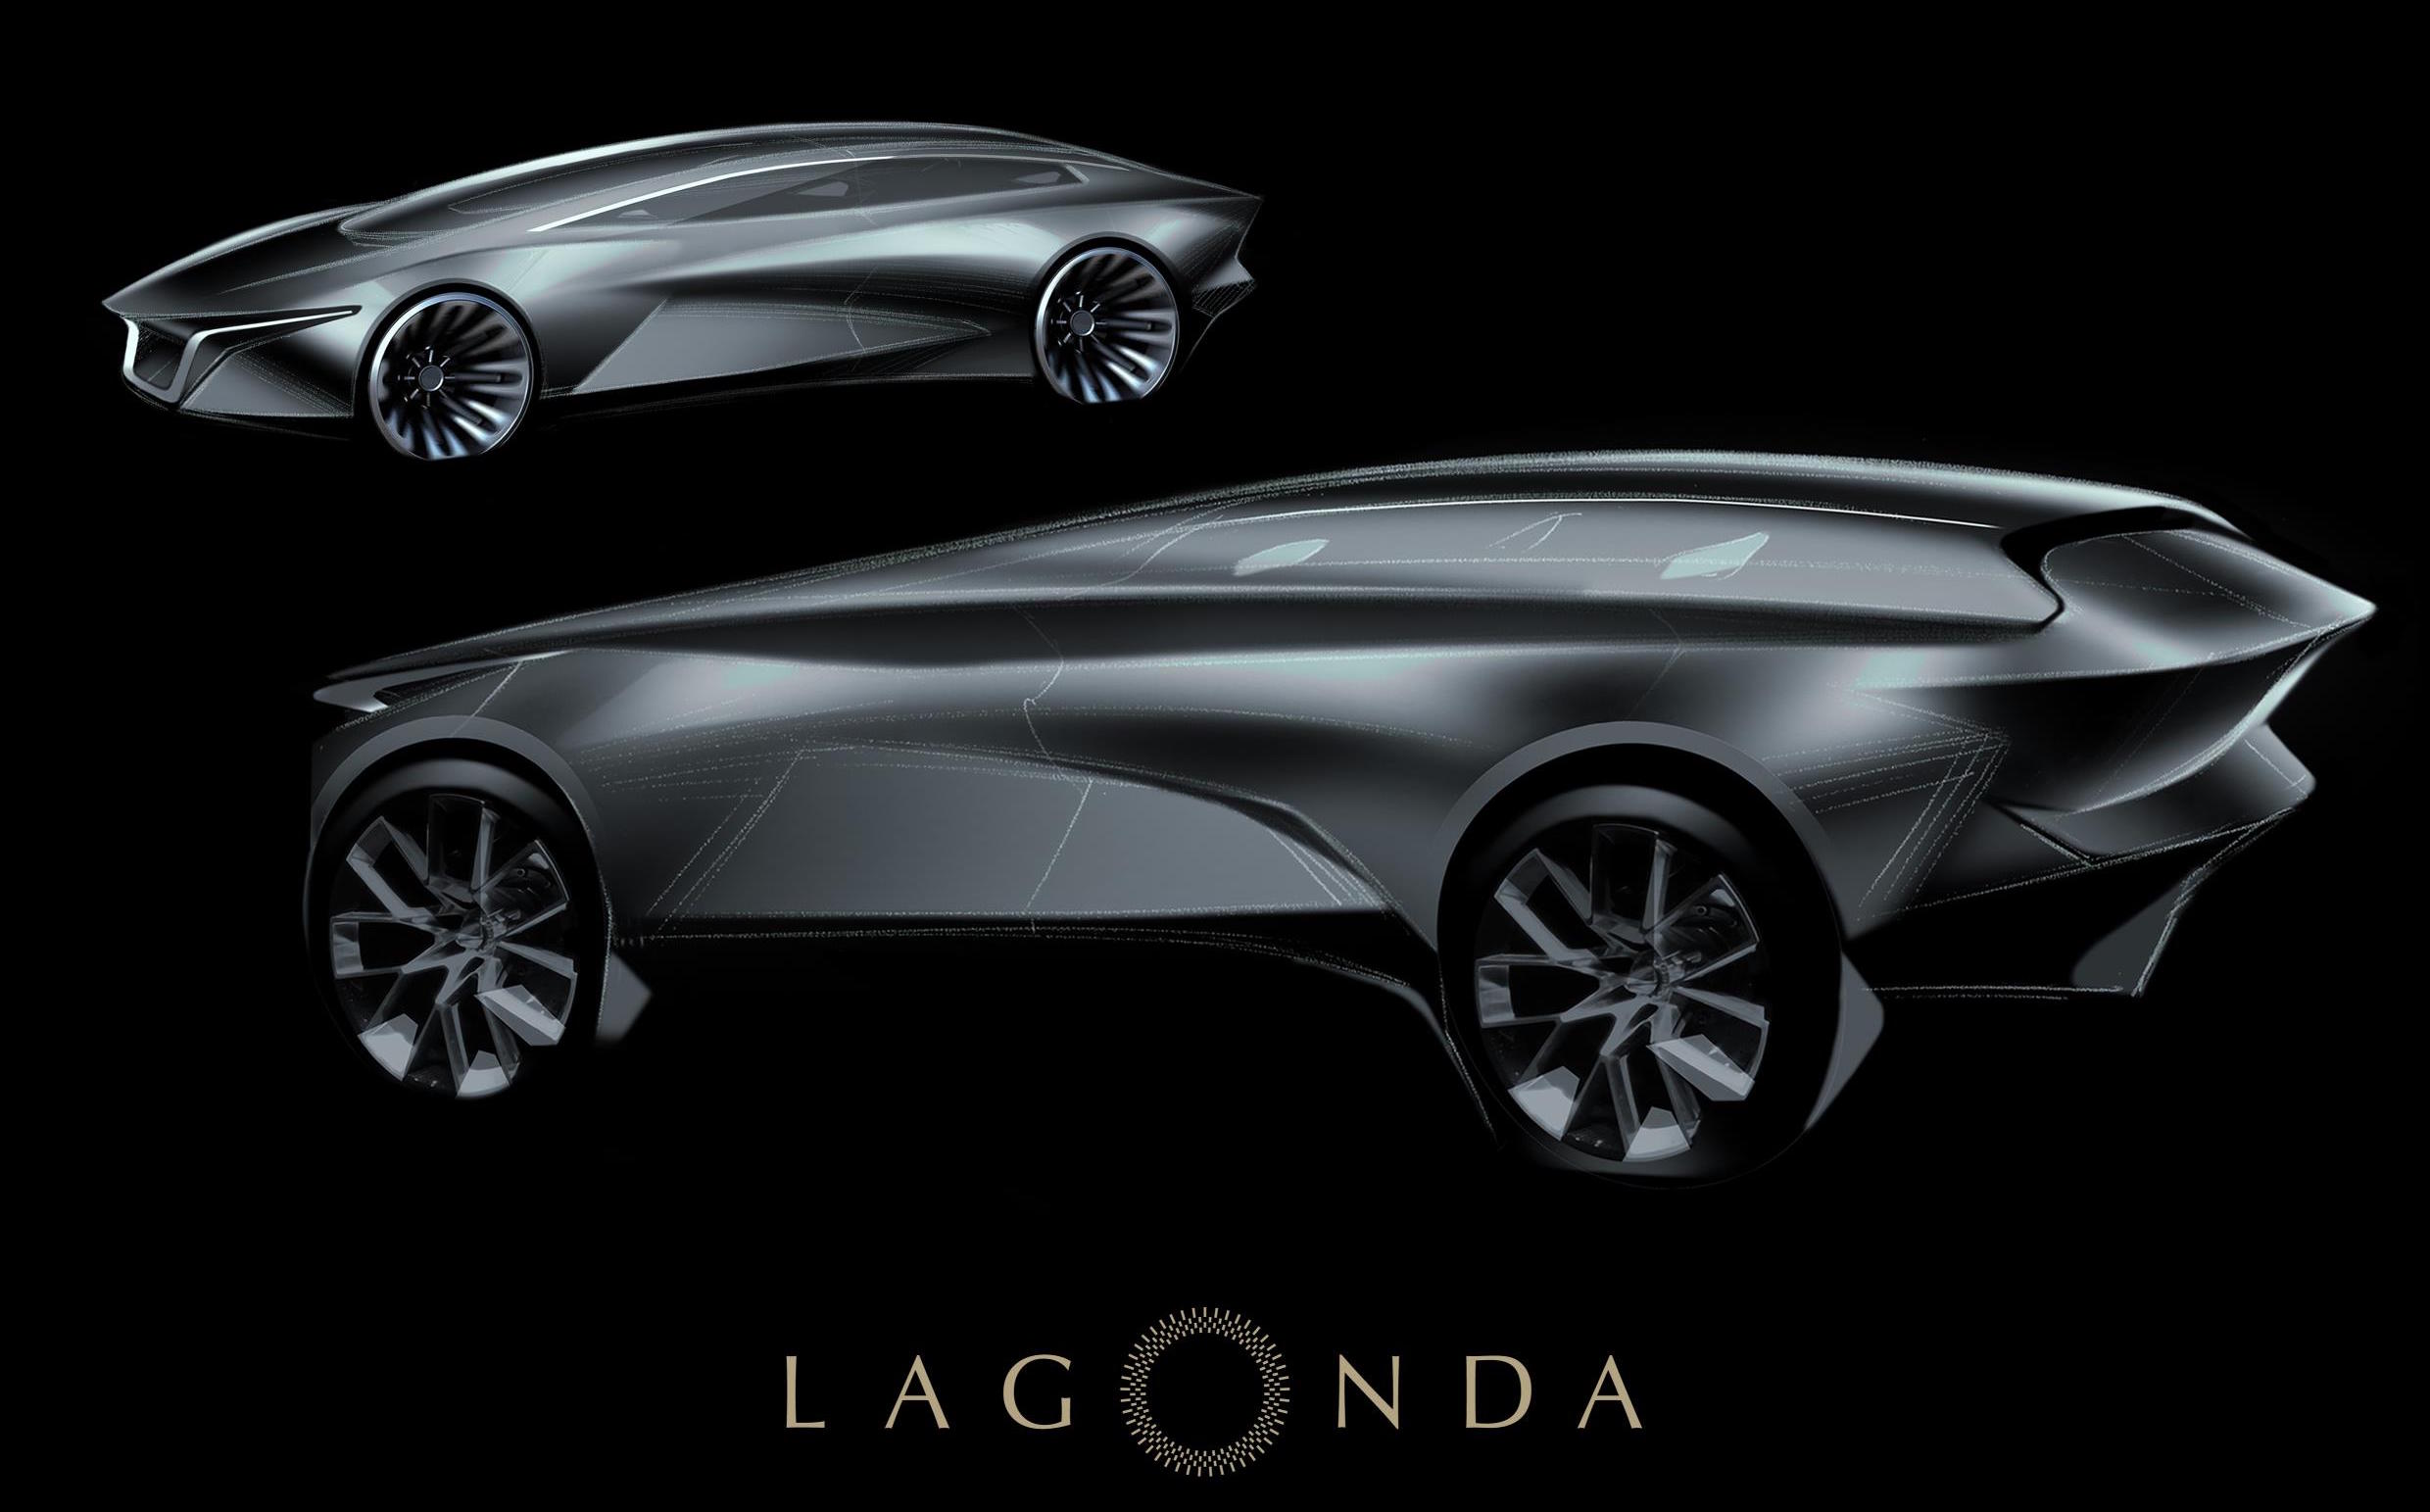 Aston Martin’s Lagonda brand confirms bold electric SUV for 2021